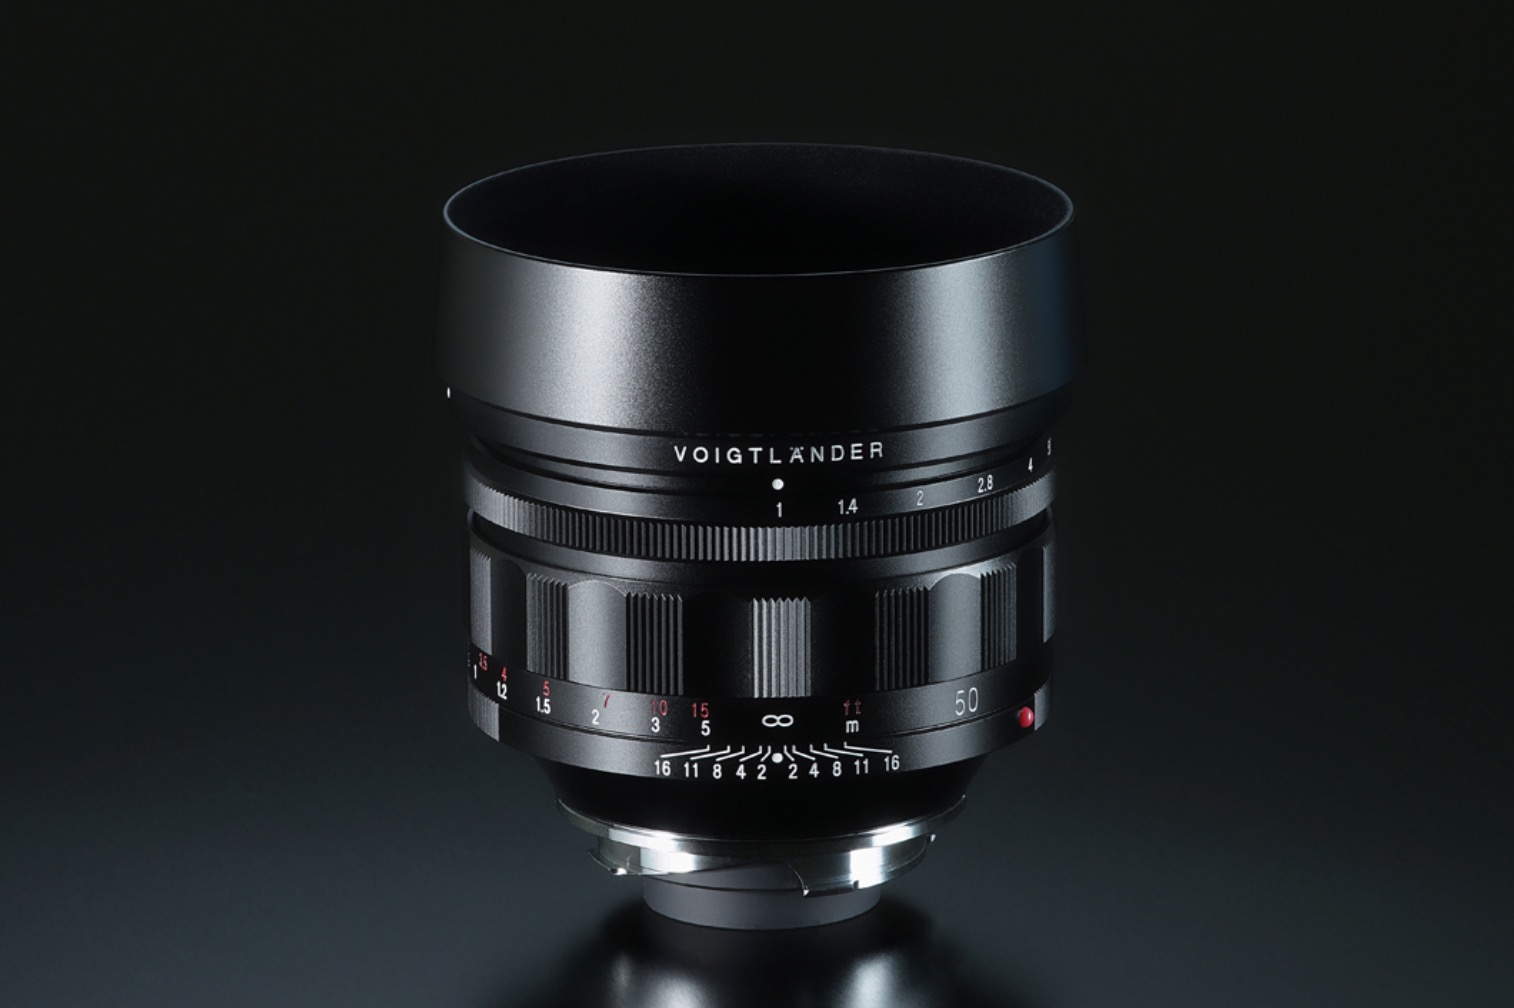 Cosina ra mắt ống kính Nokton 50mm F1 VM, chiếc ống kính khẩu độ mở rộng nhất dành cho full frame